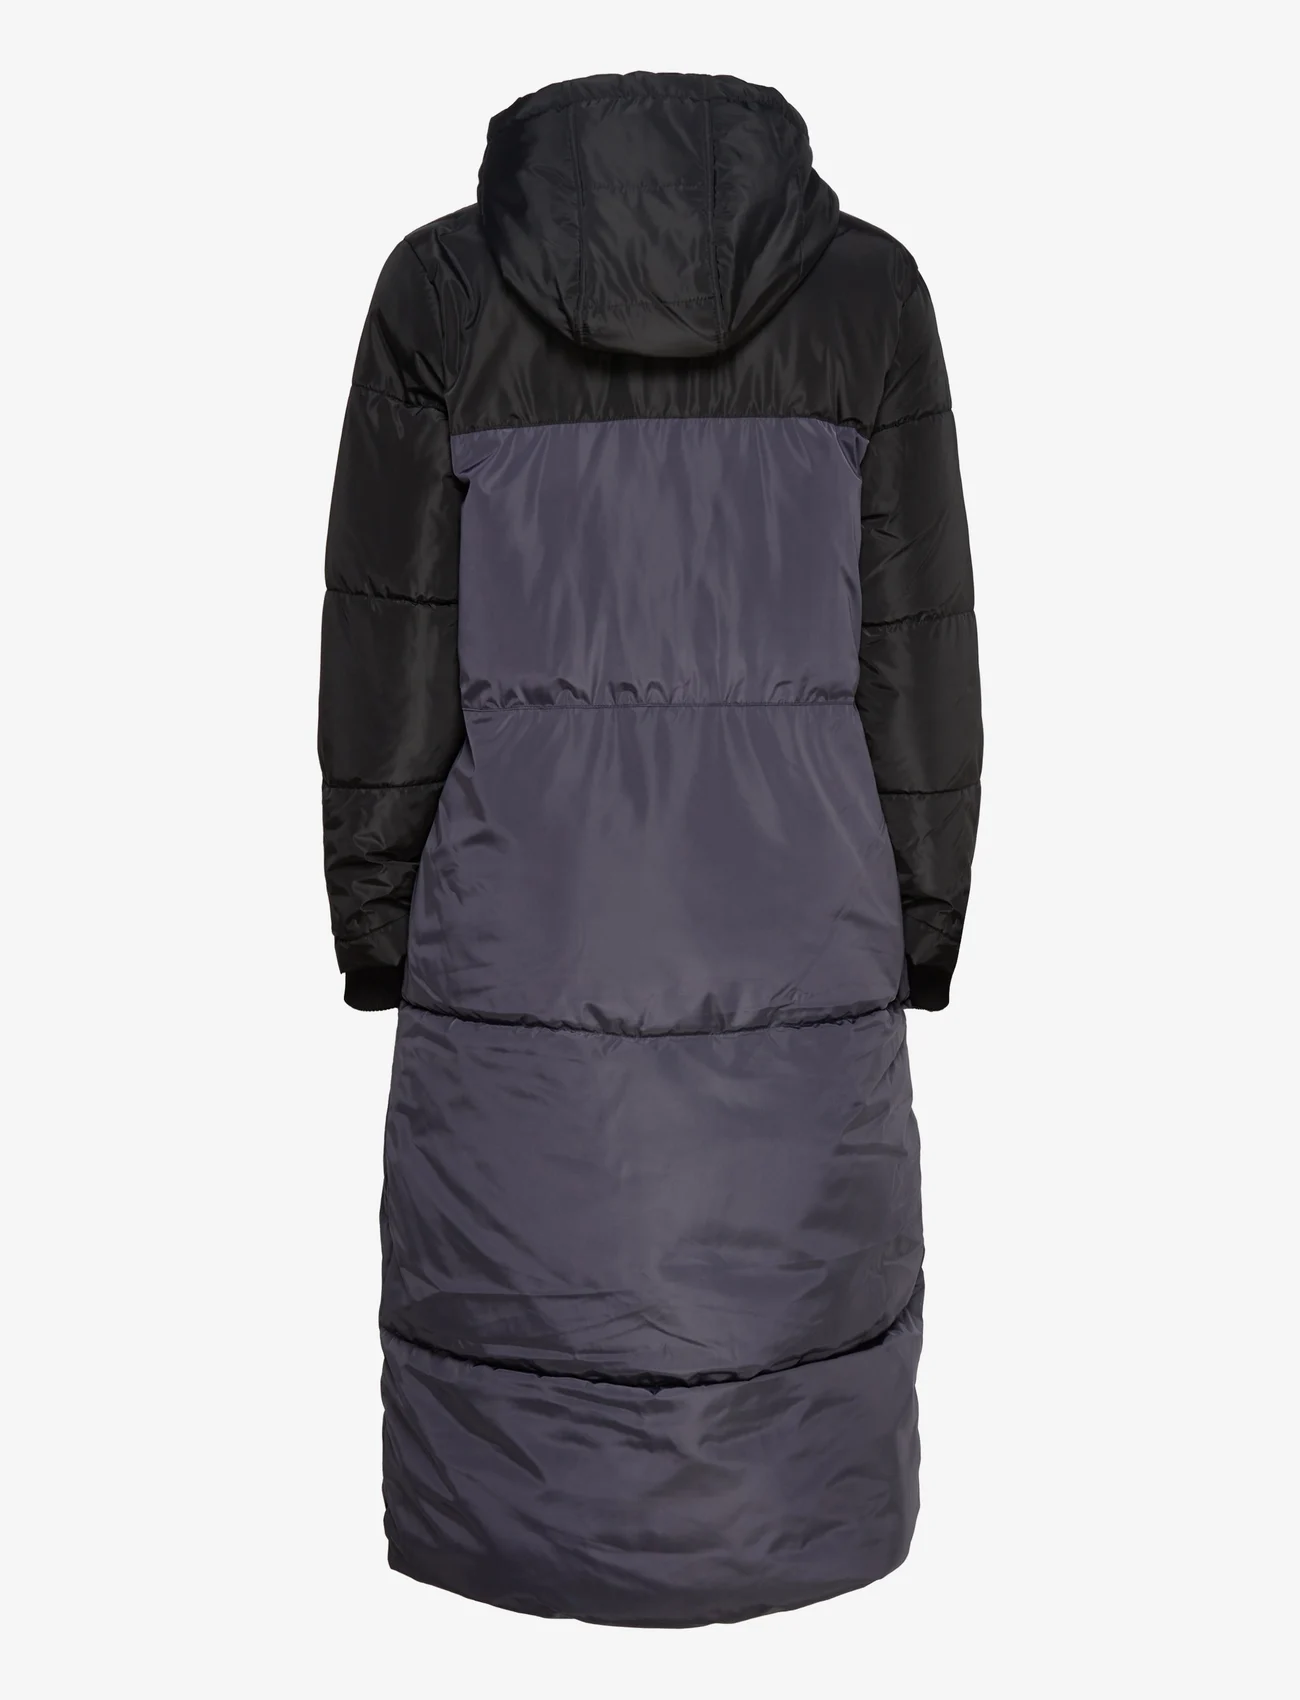 Saint Tropez - NajaSZ Jacket - winter jackets - odyssey gray - 1